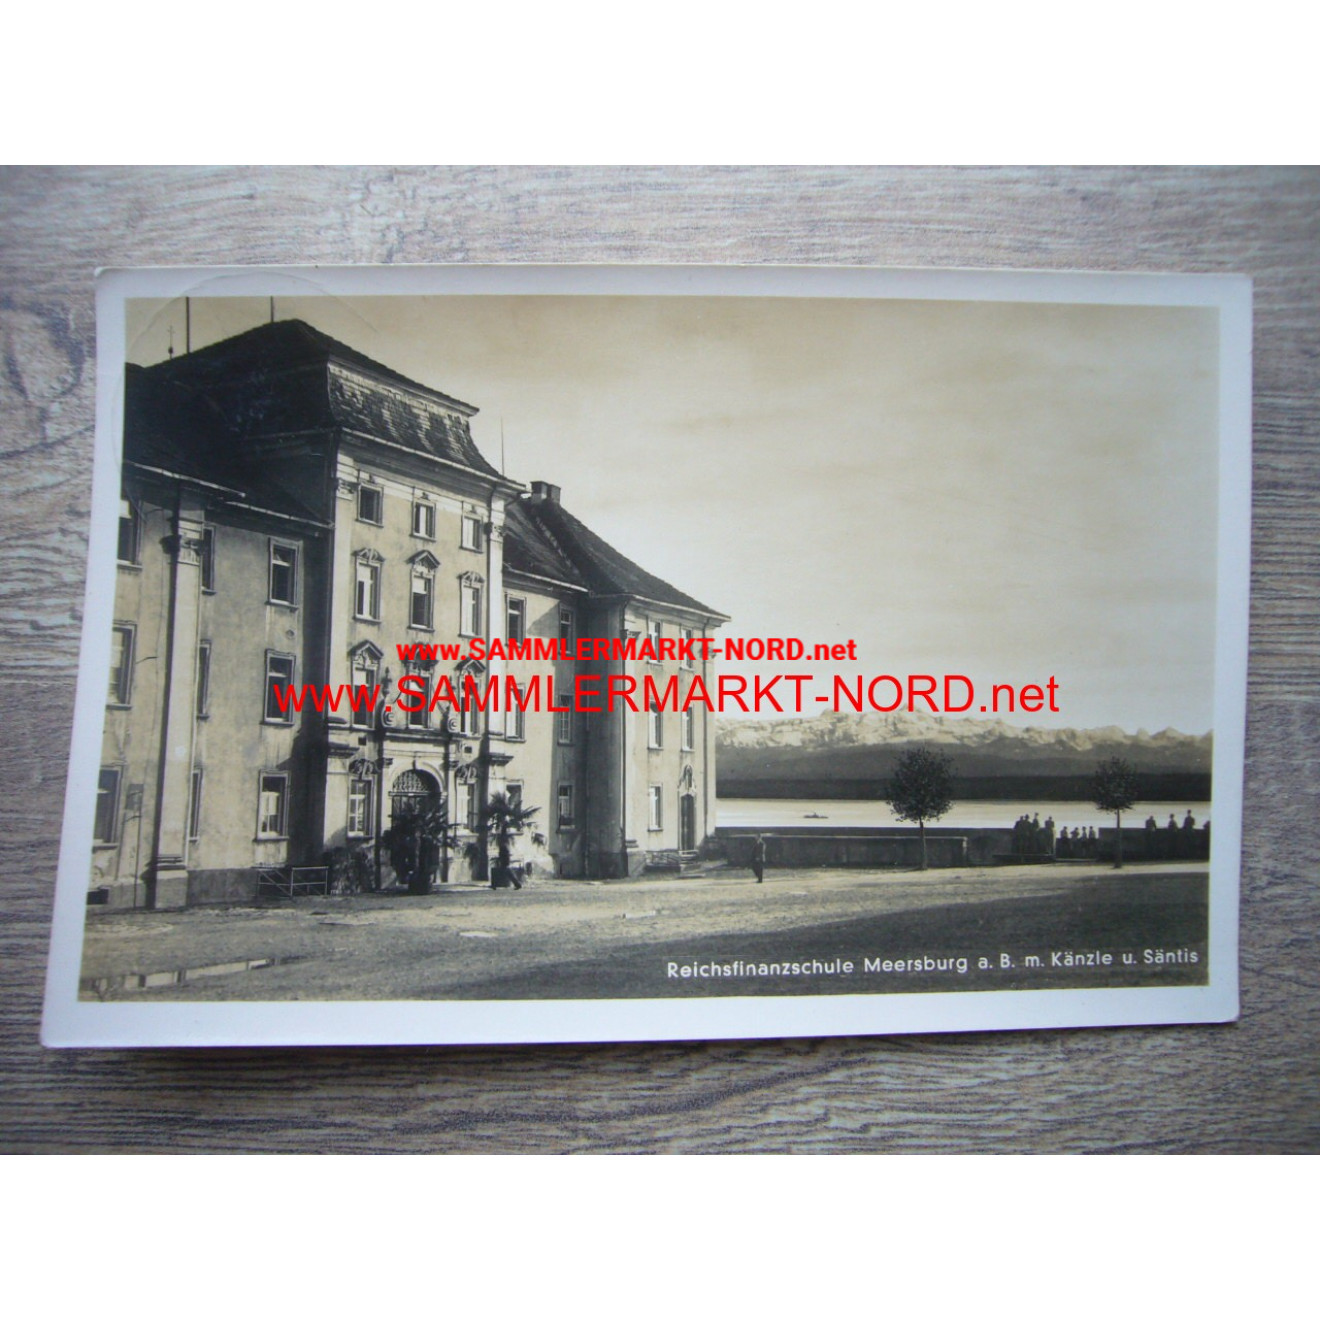 Reichsfinanzschule Meersburg (RfV) - Postkarte